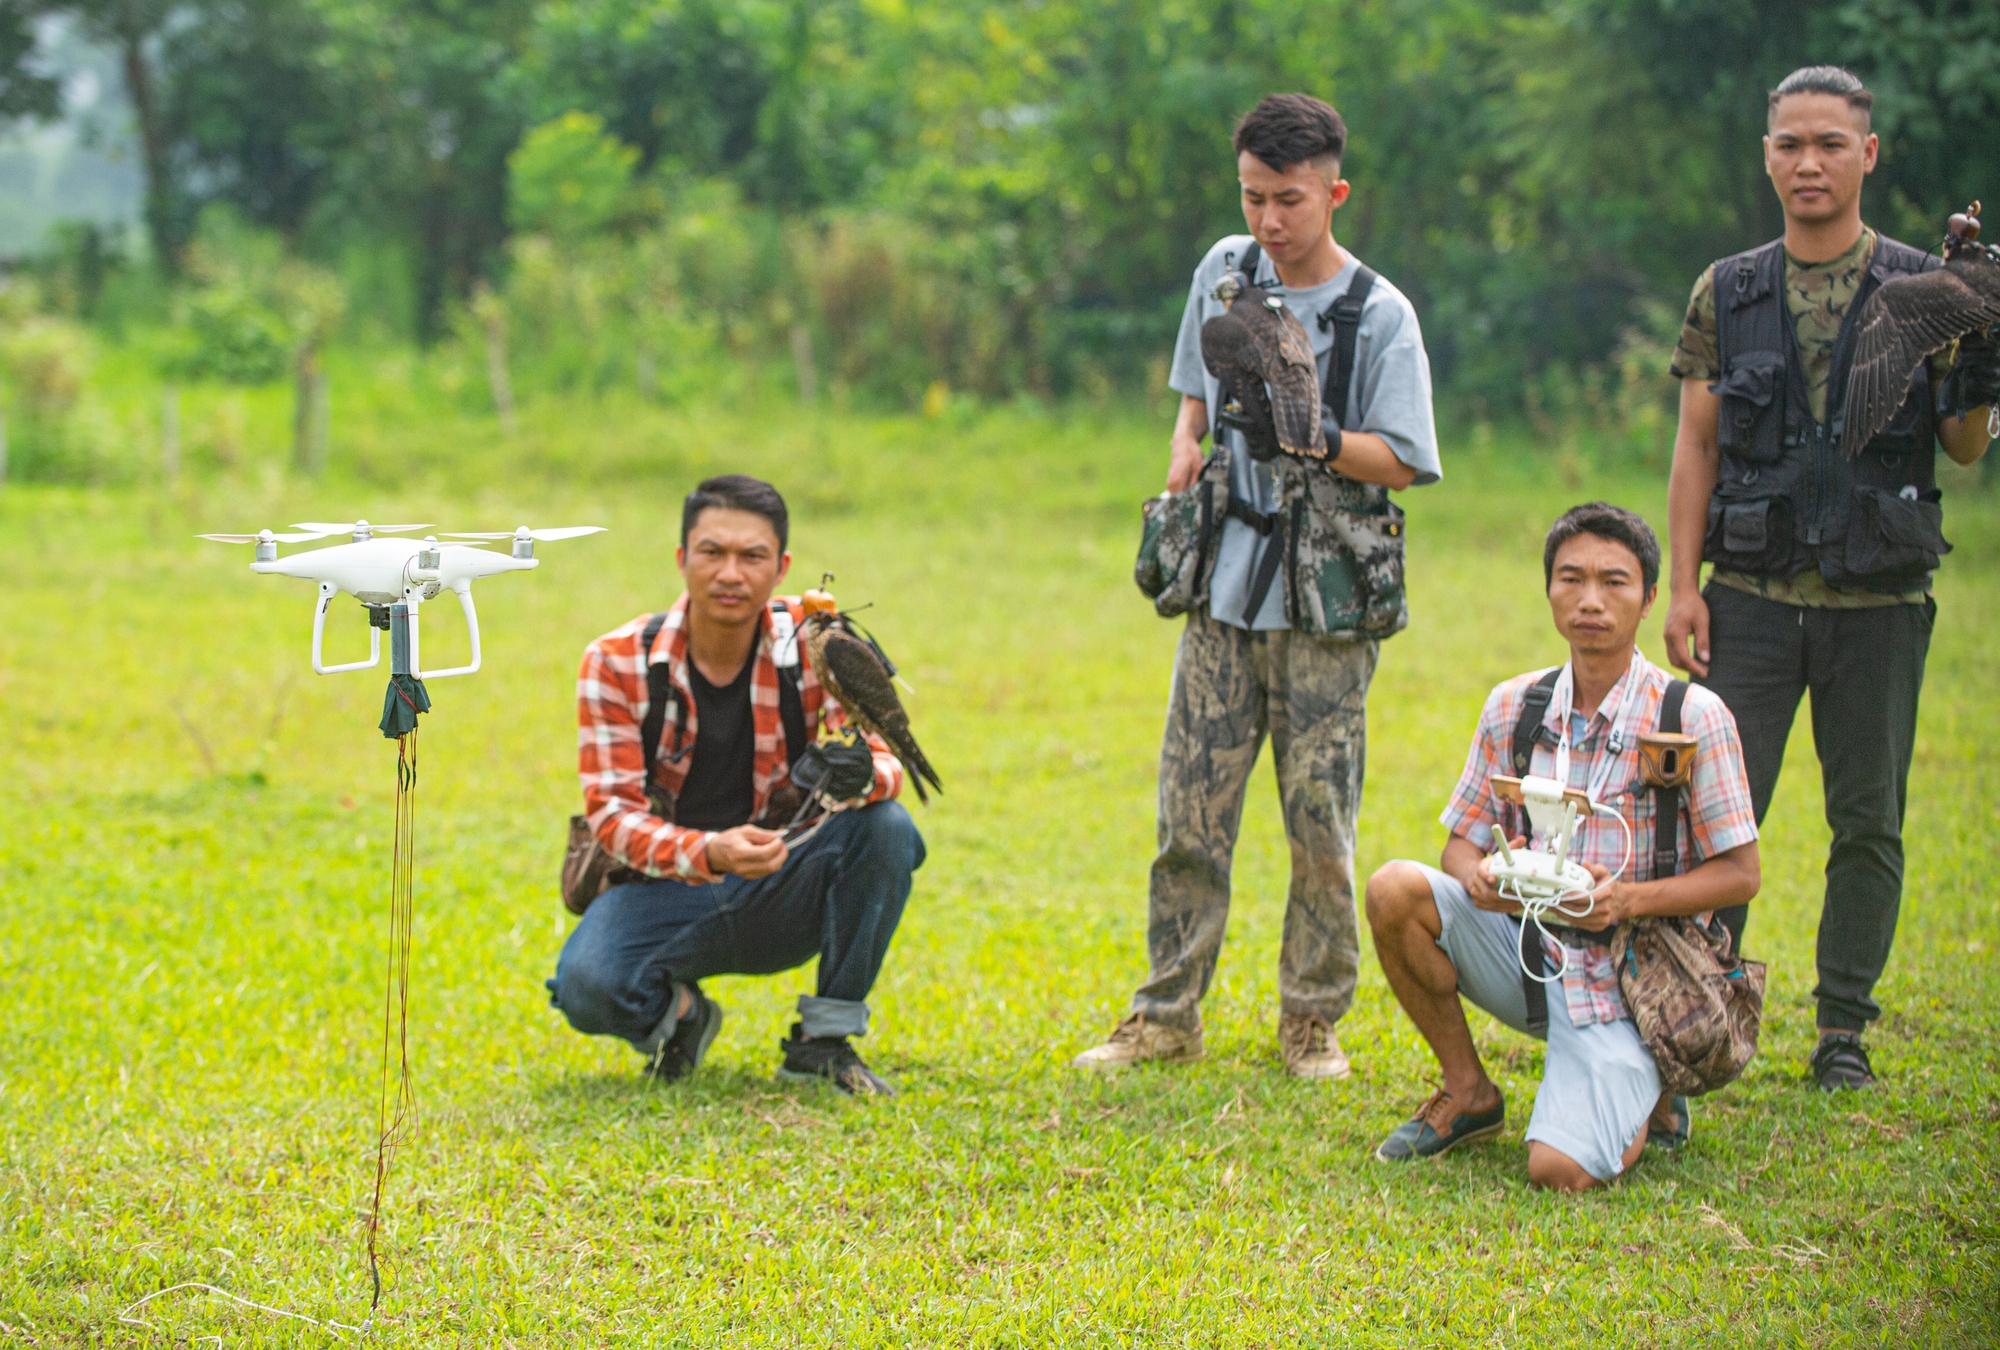 Ảnh: Dùng flycam, định vị GPS, tiêu tốn hàng chục triệu huấn luyện chim săn mồi để giải trí - Ảnh 10.